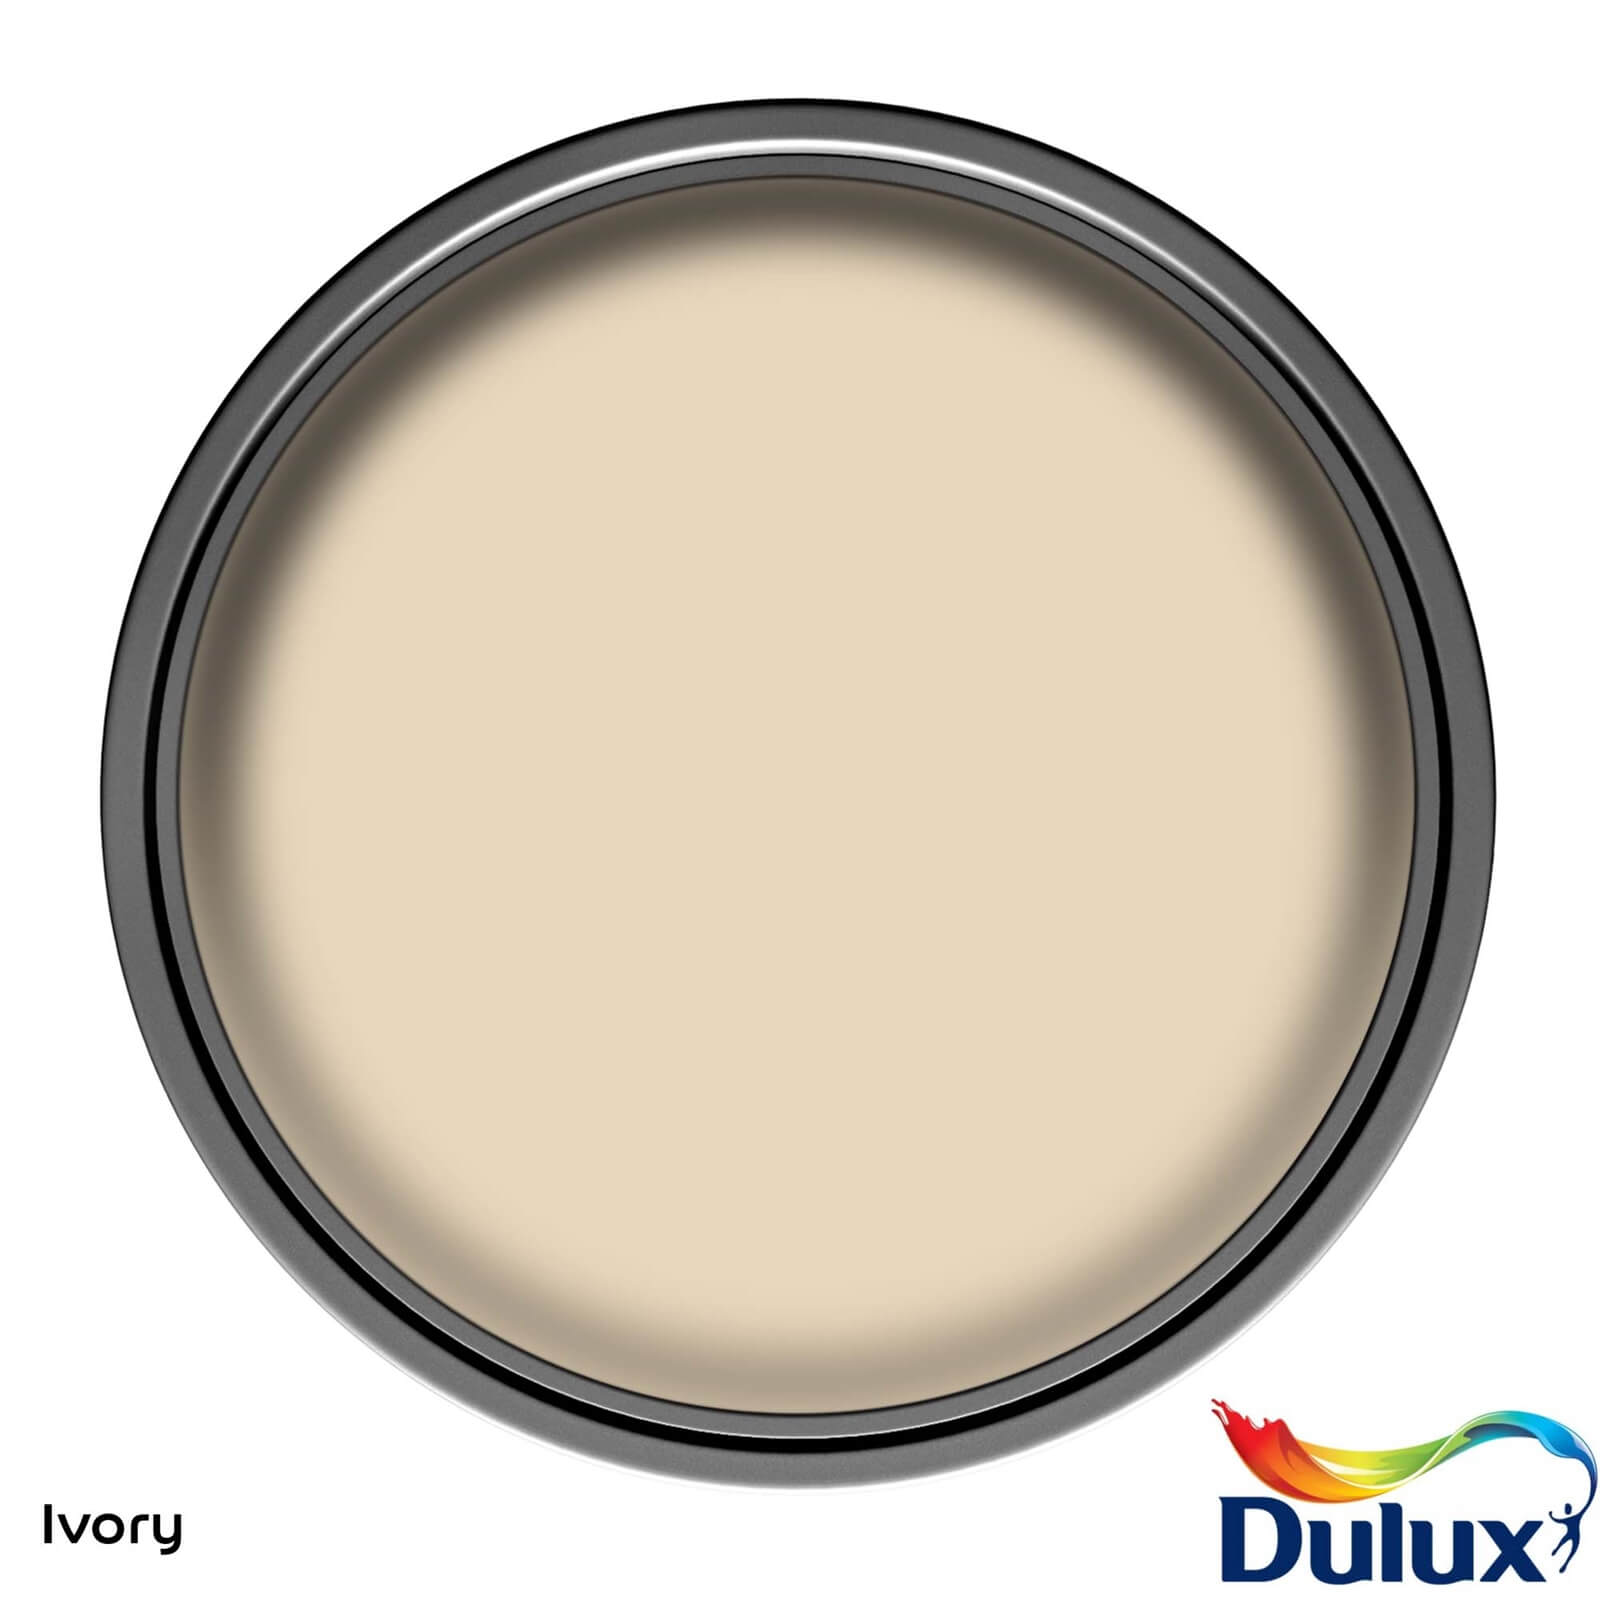 Dulux Silk Emulsion Paint Ivory - 5L